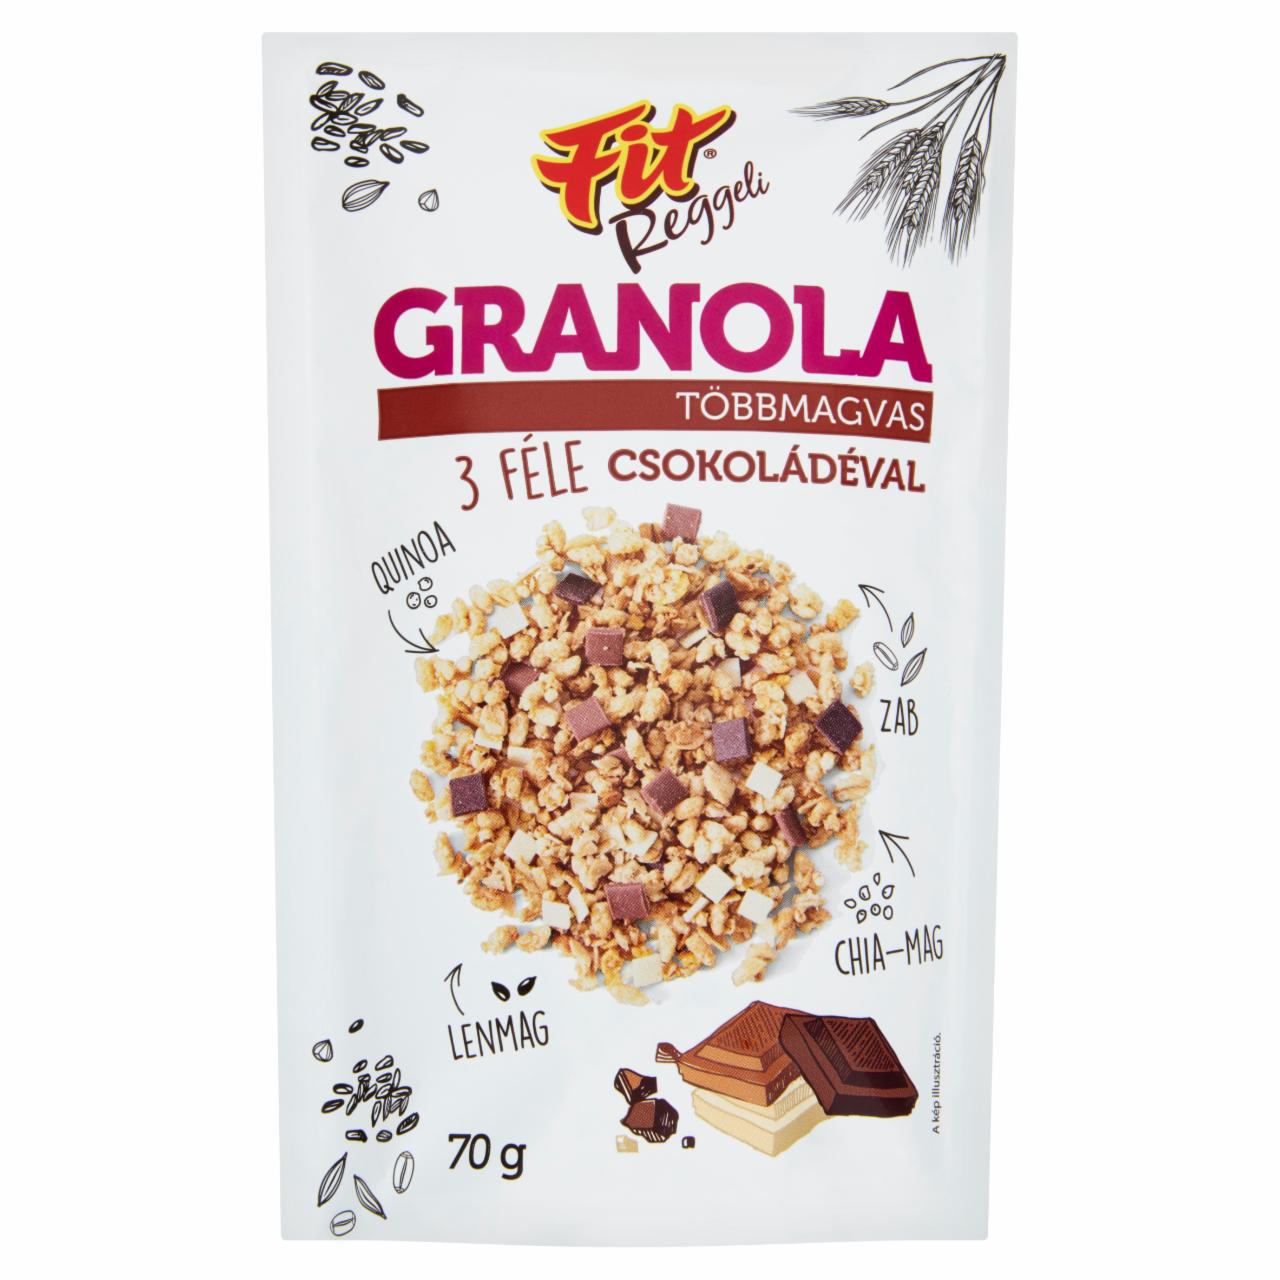 Képek - Fit többmagvas granola 3 féle csokoládéval 70 g